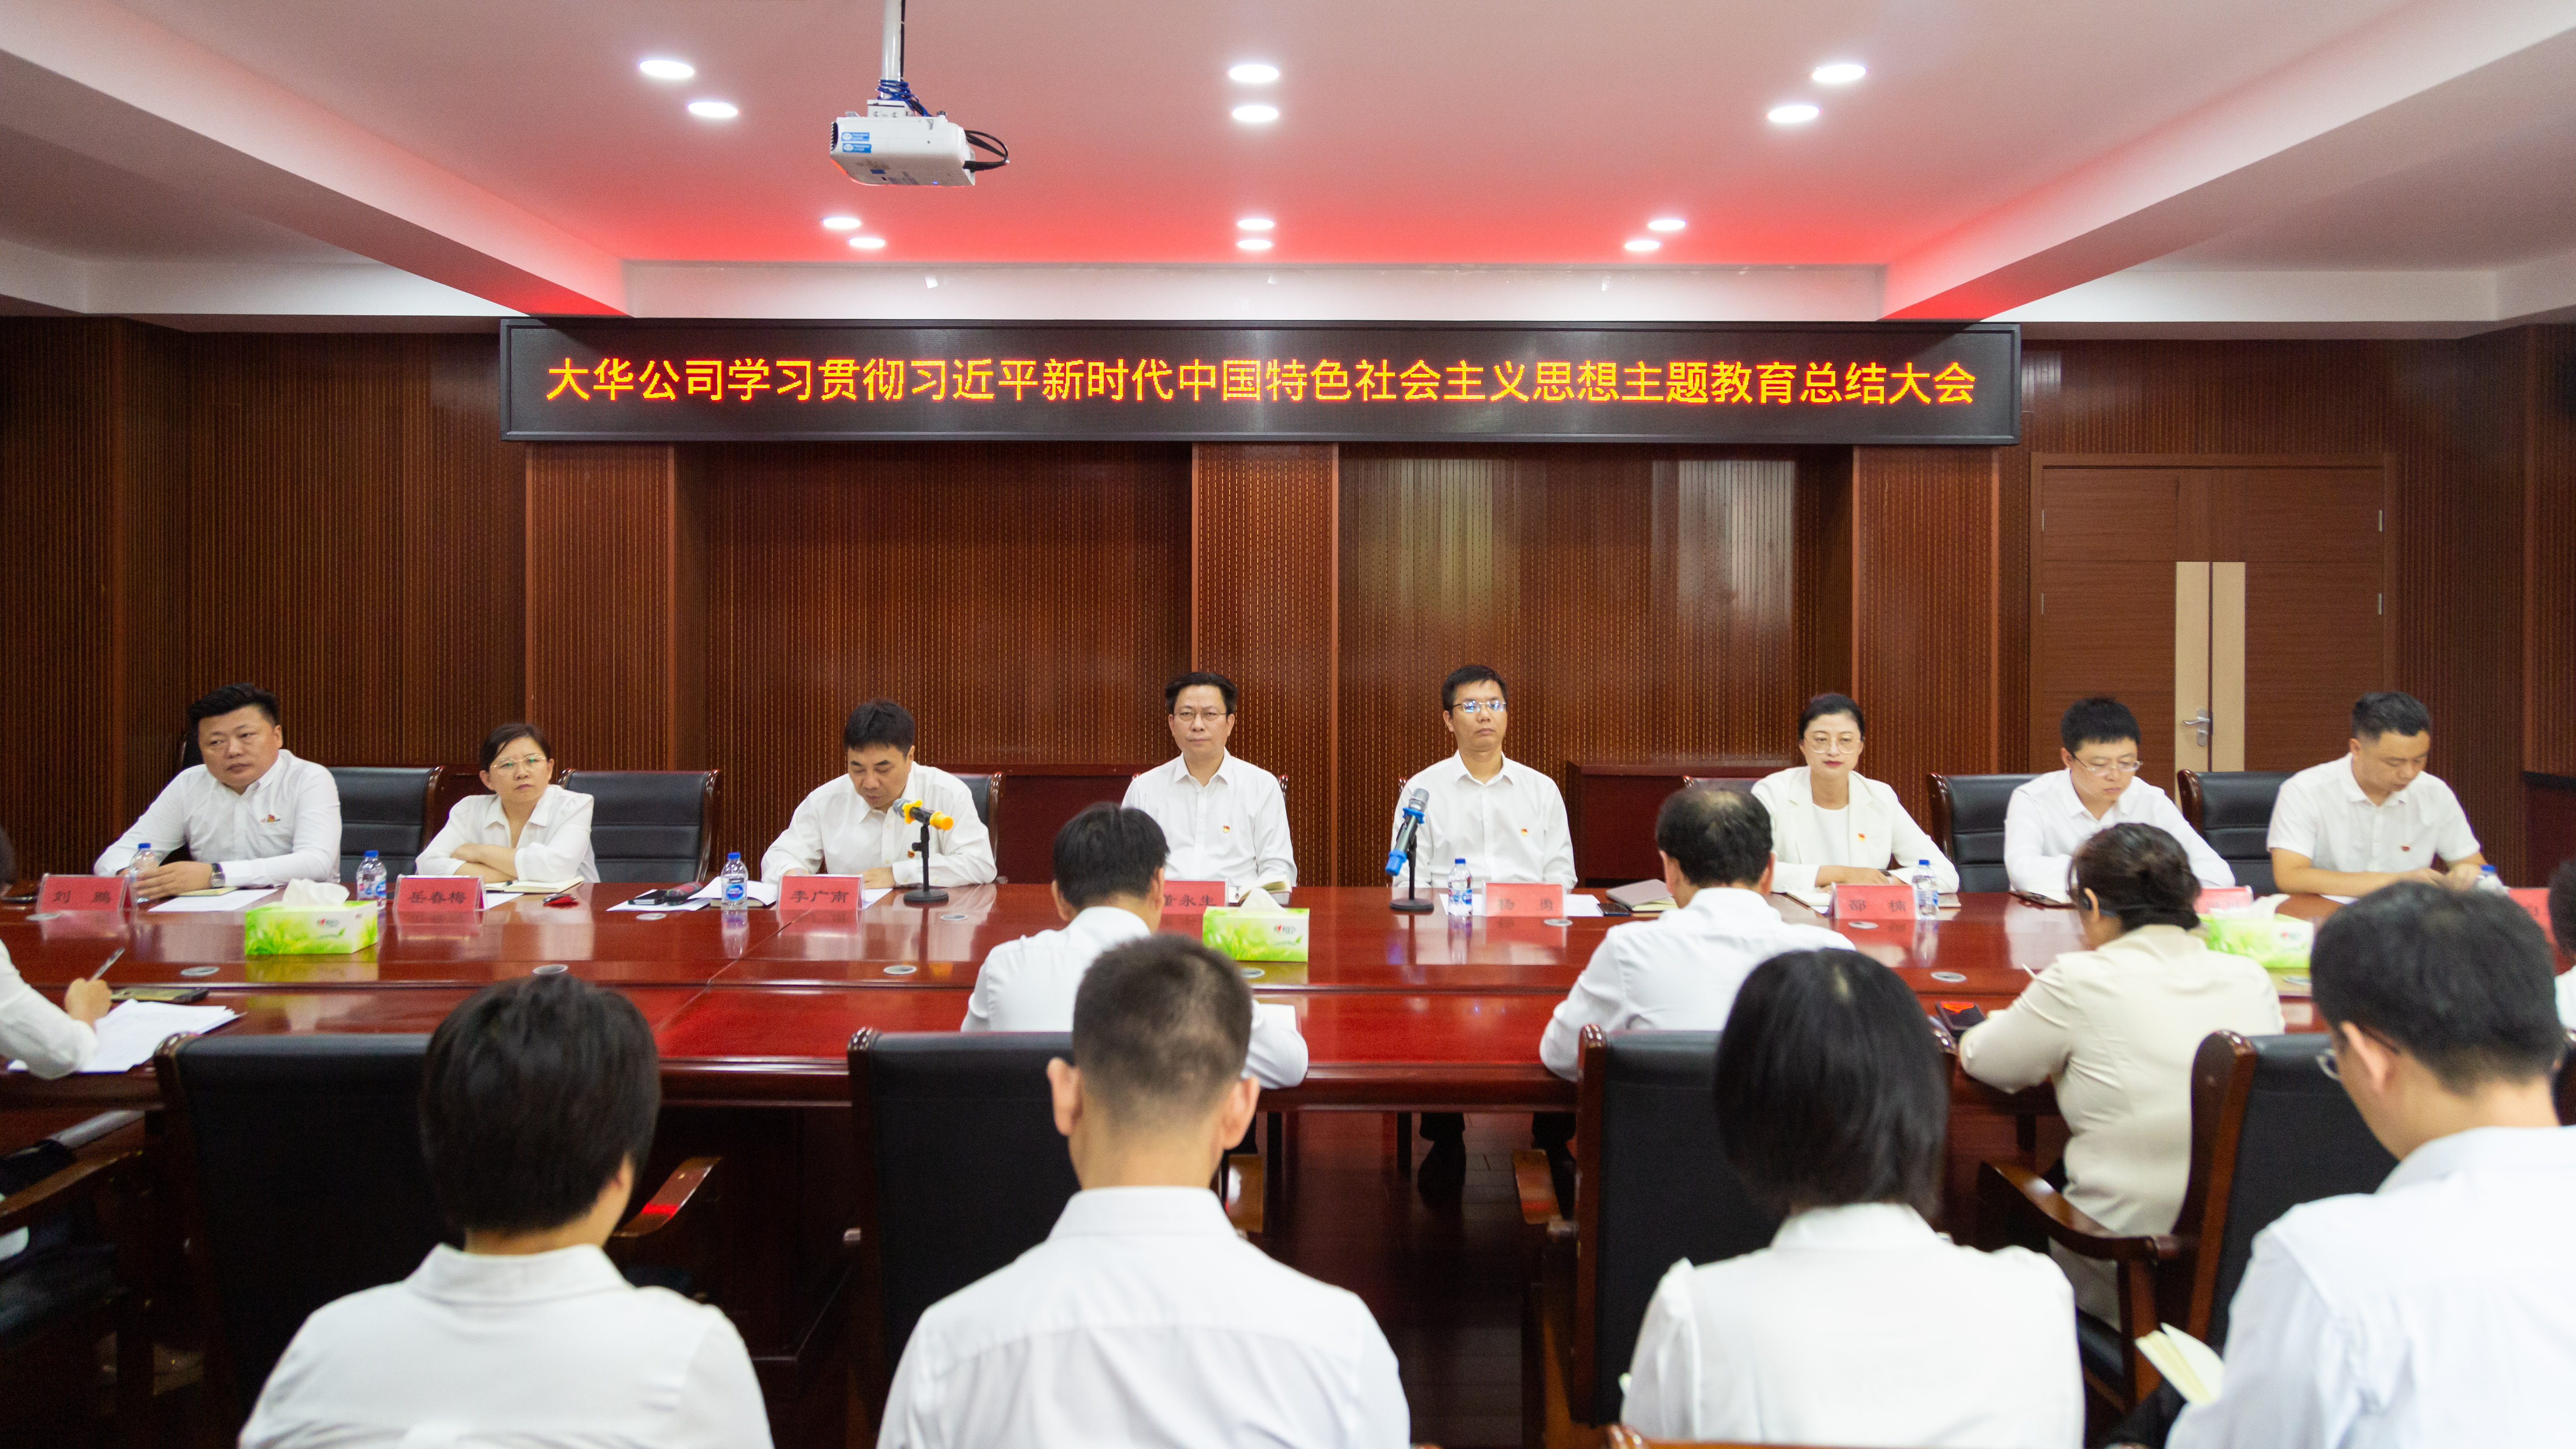 大華公司召開學習貫徹習近平新時代中國特色社會主義思想主題教育總結大會